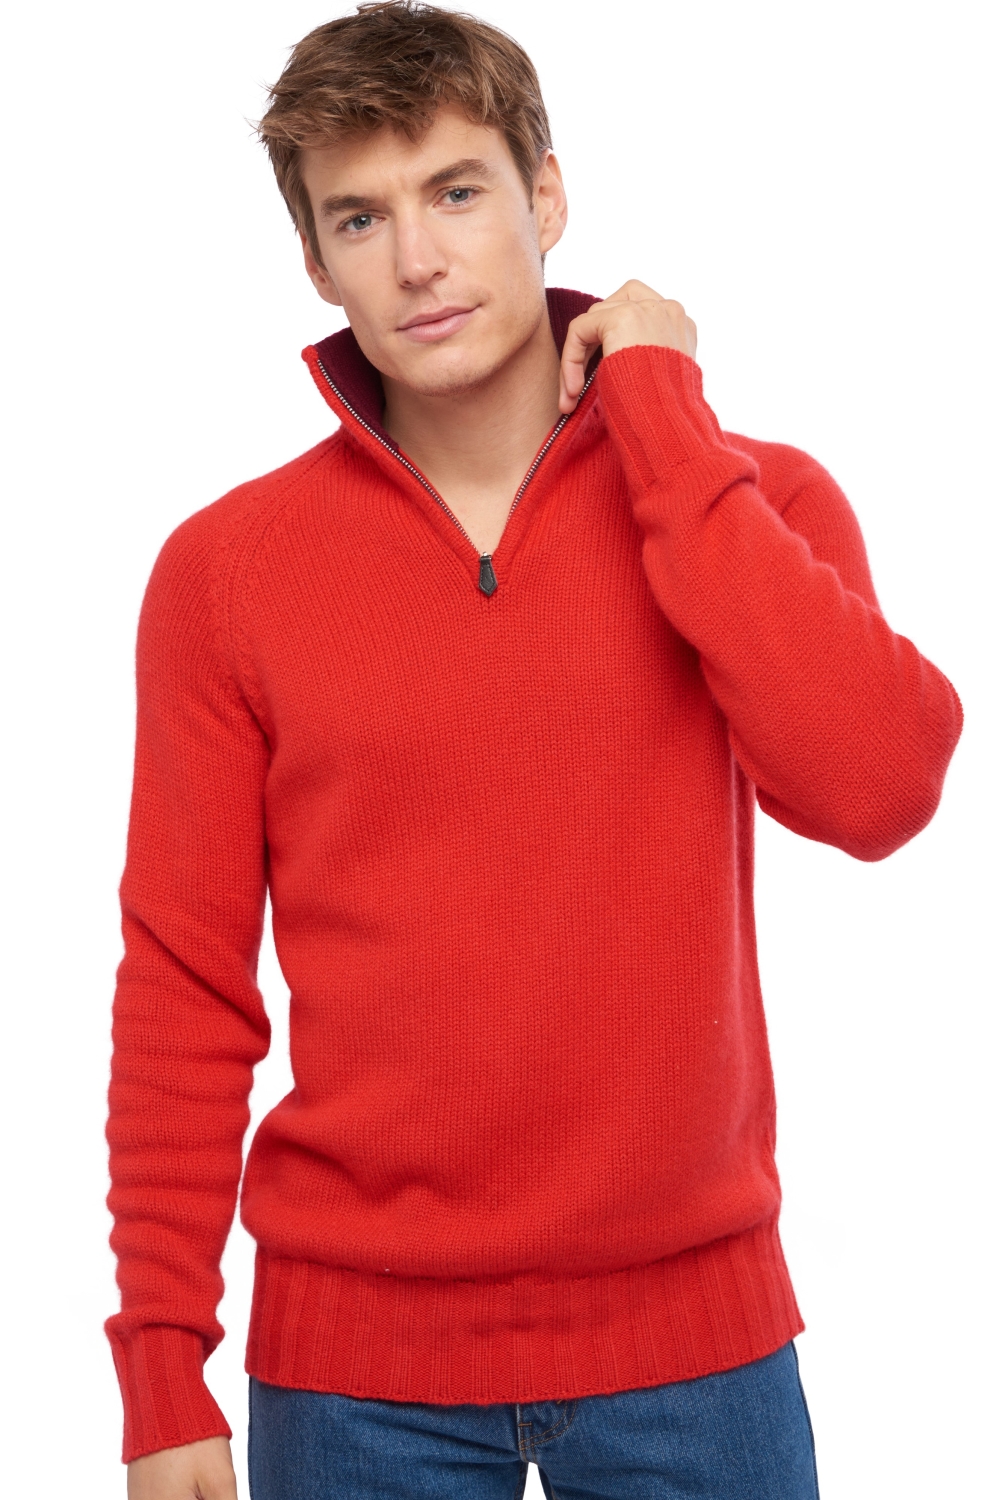 Cashmere men polo style sweaters olivier rouge bordeaux l